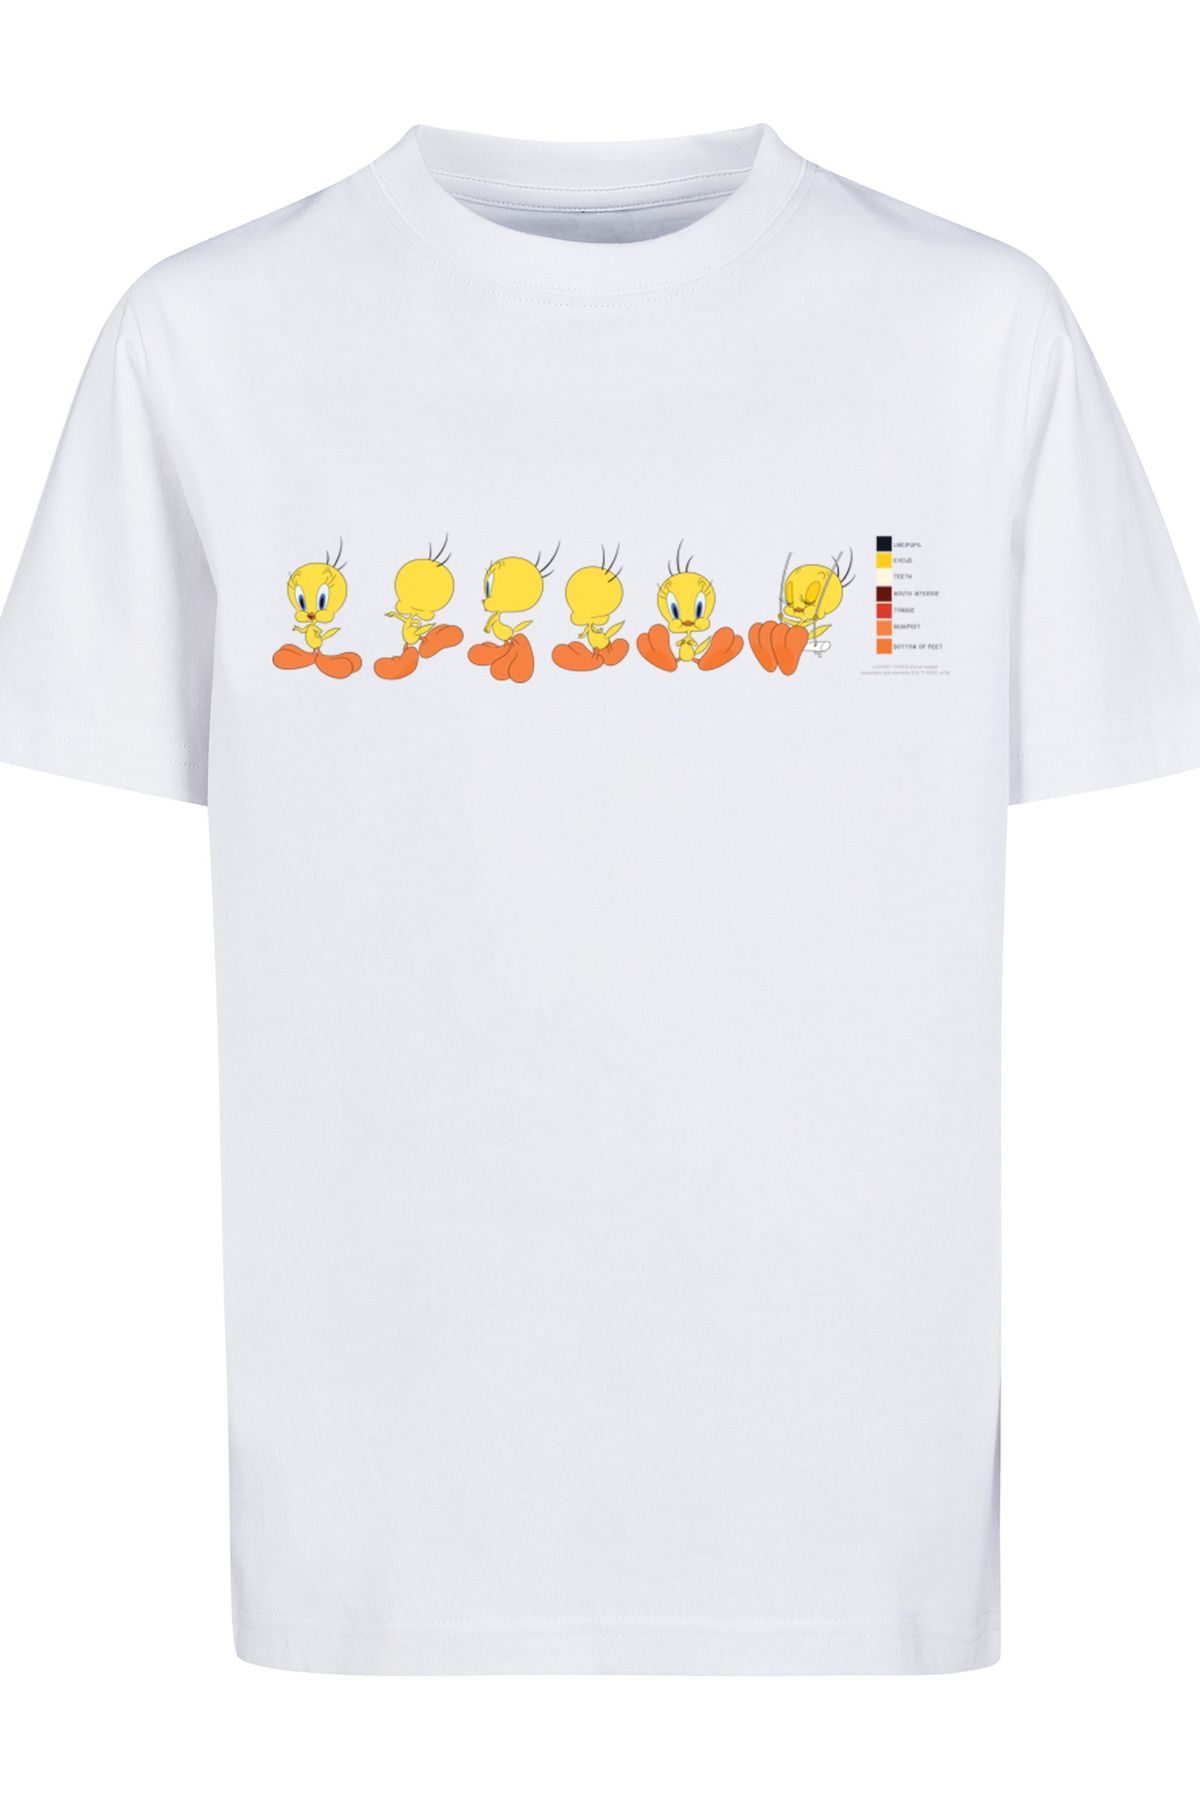 F4NT4STIC Tunes - Kinder Trendyol Basic mit Pie Kids T-Shirt Looney Farbcode-WHT Tweety